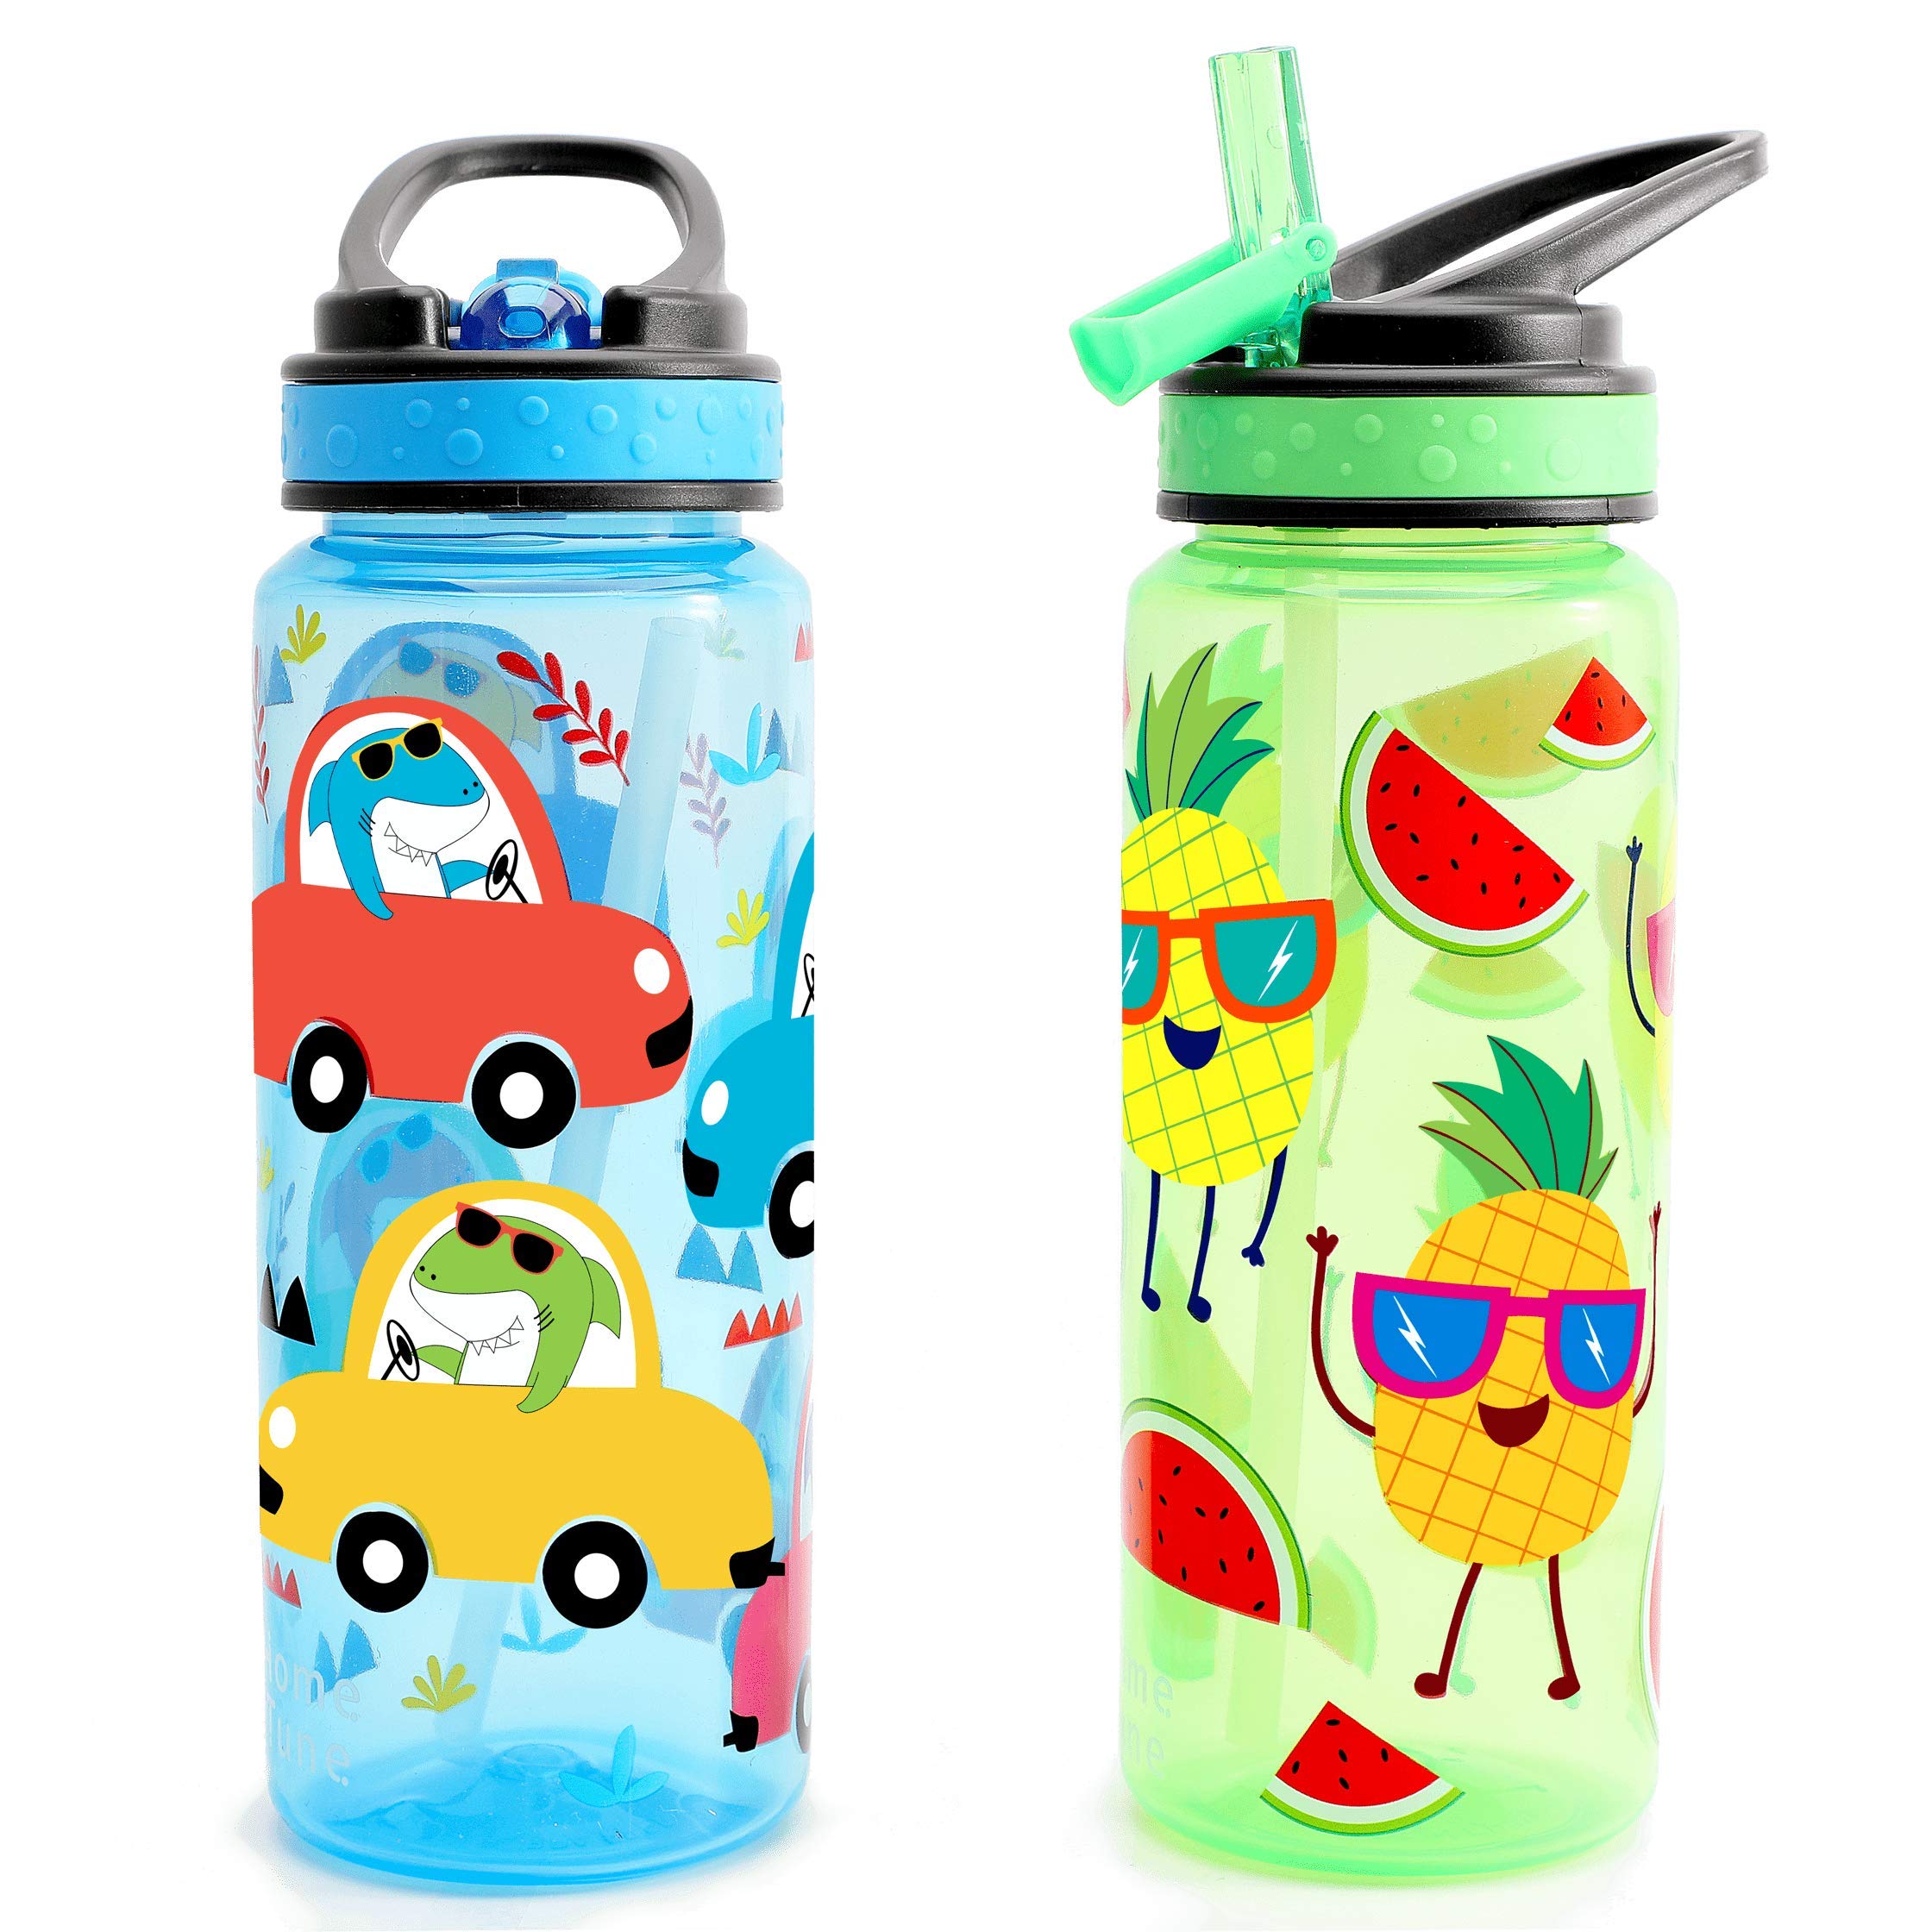 Home Tune 16oz Kids Water Drinking Bottle - Tritan BPA Free, Flip Straw Lid, Wide Mouth, Carry Loop, Lightweight, Leak-Proof Water Bottle Cute Design